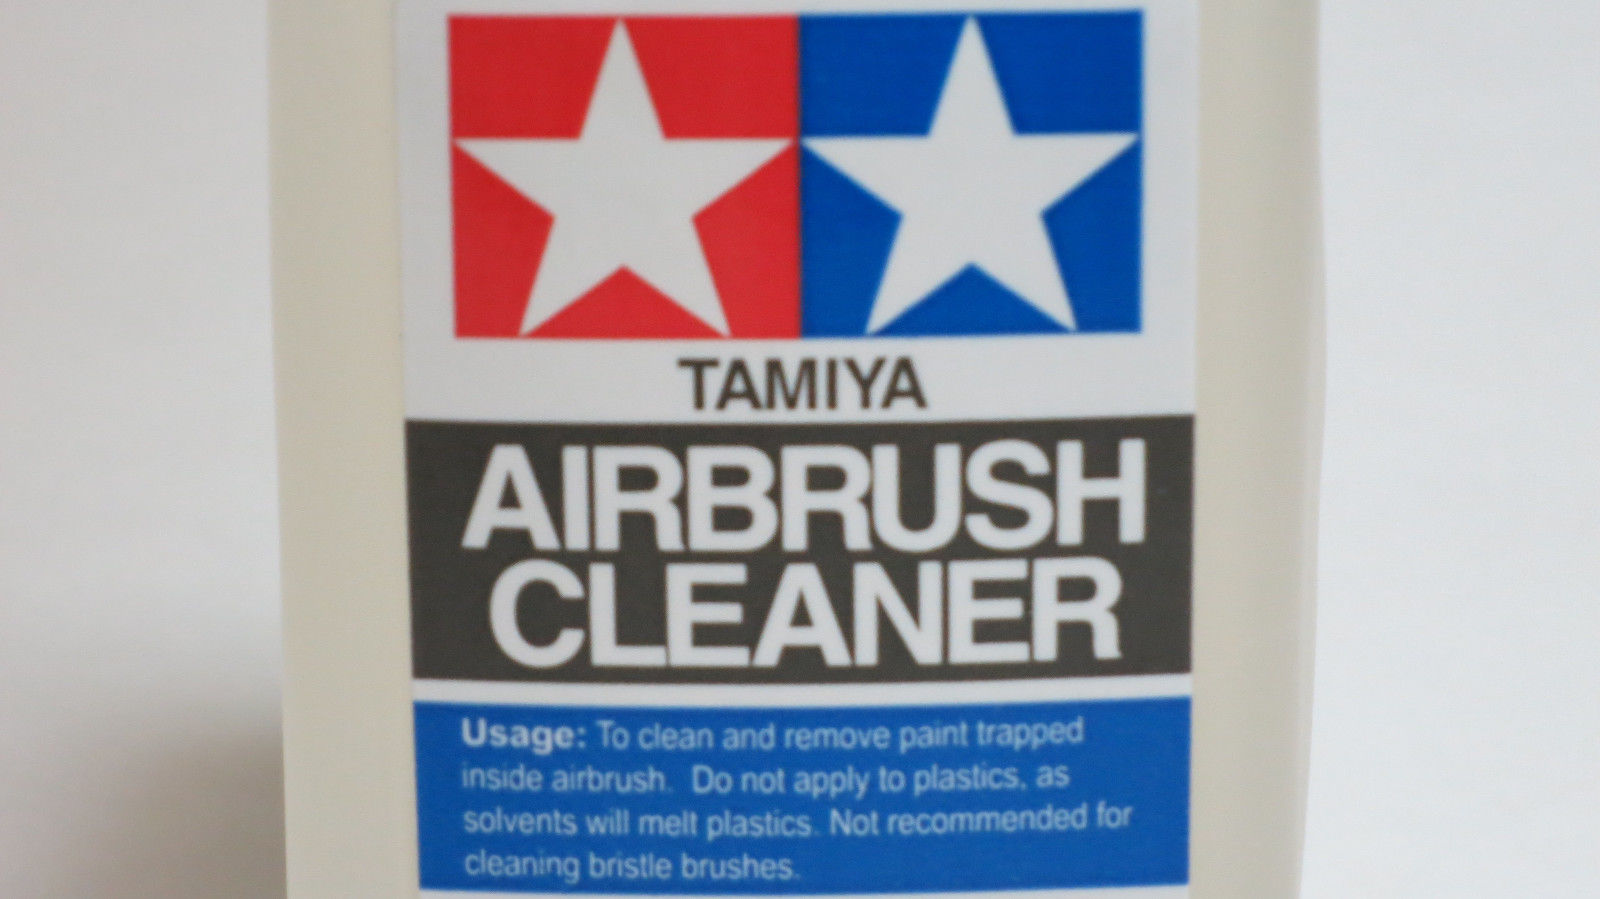 Tamiya Airbrush Cleaner (250ml)